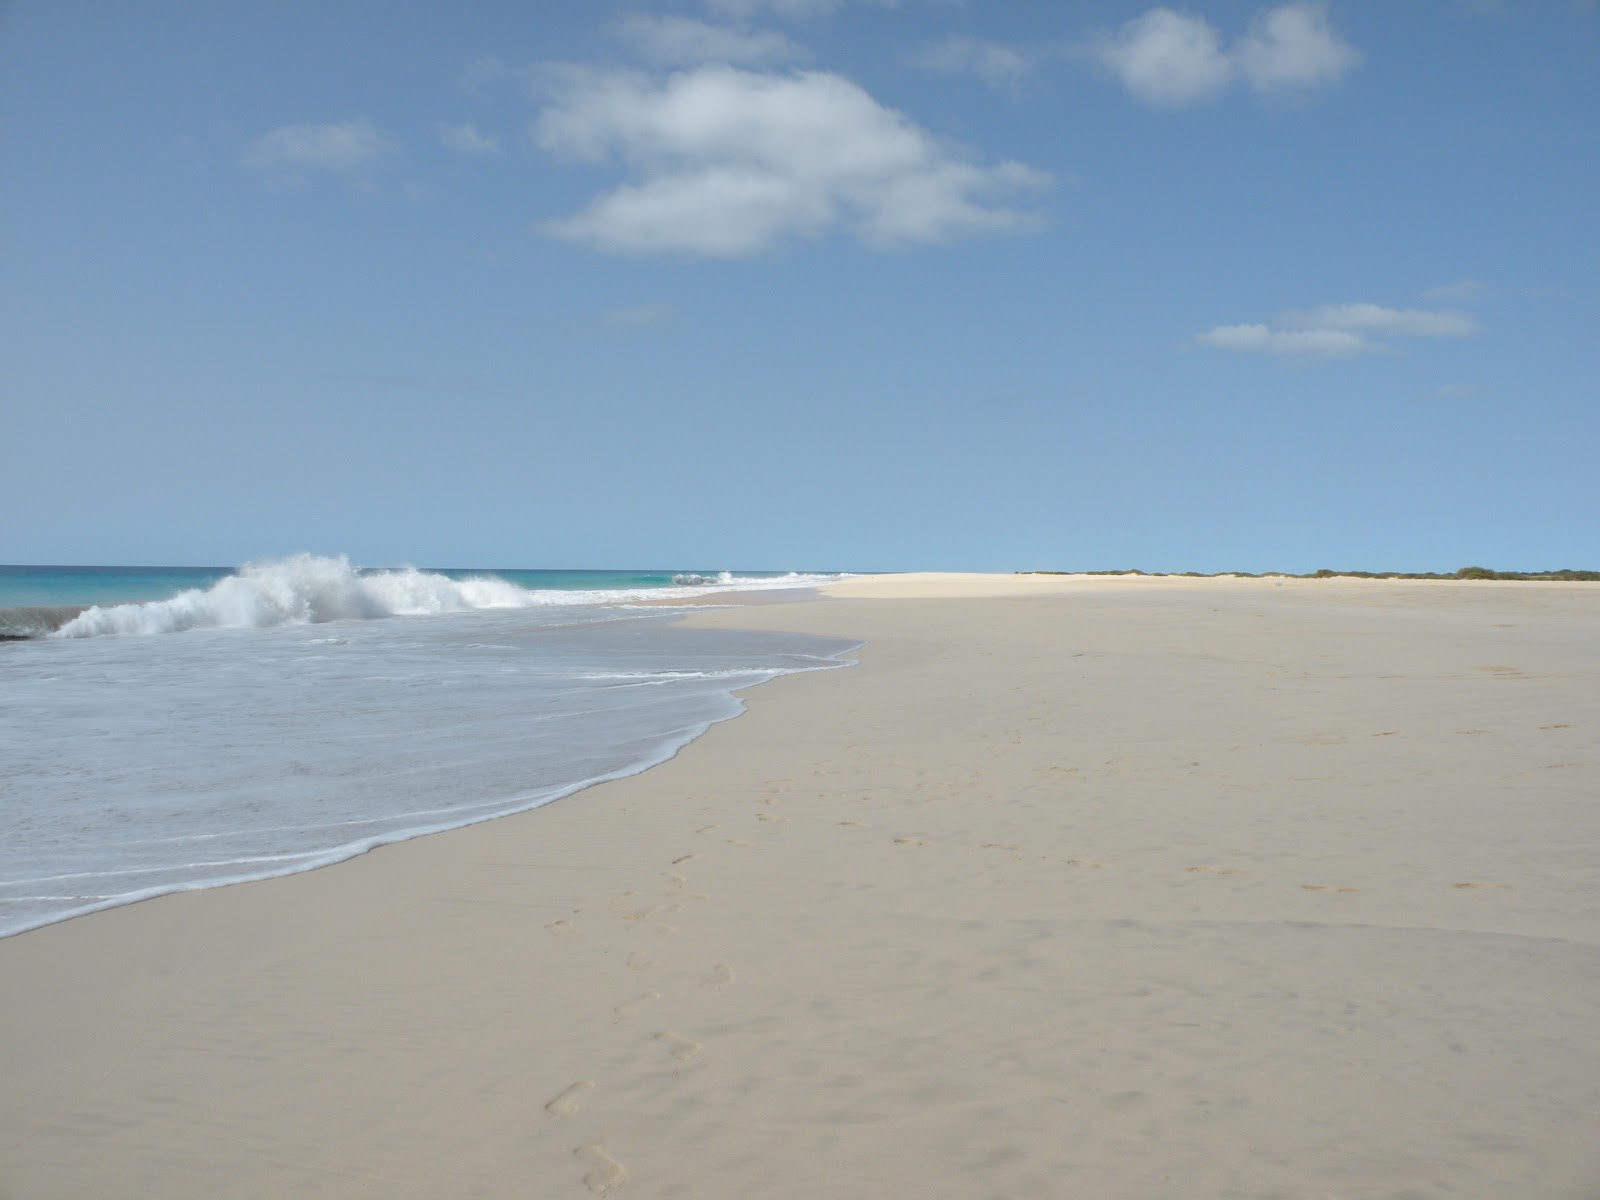 Carquejinha Beach'in fotoğrafı parlak ince kum yüzey ile